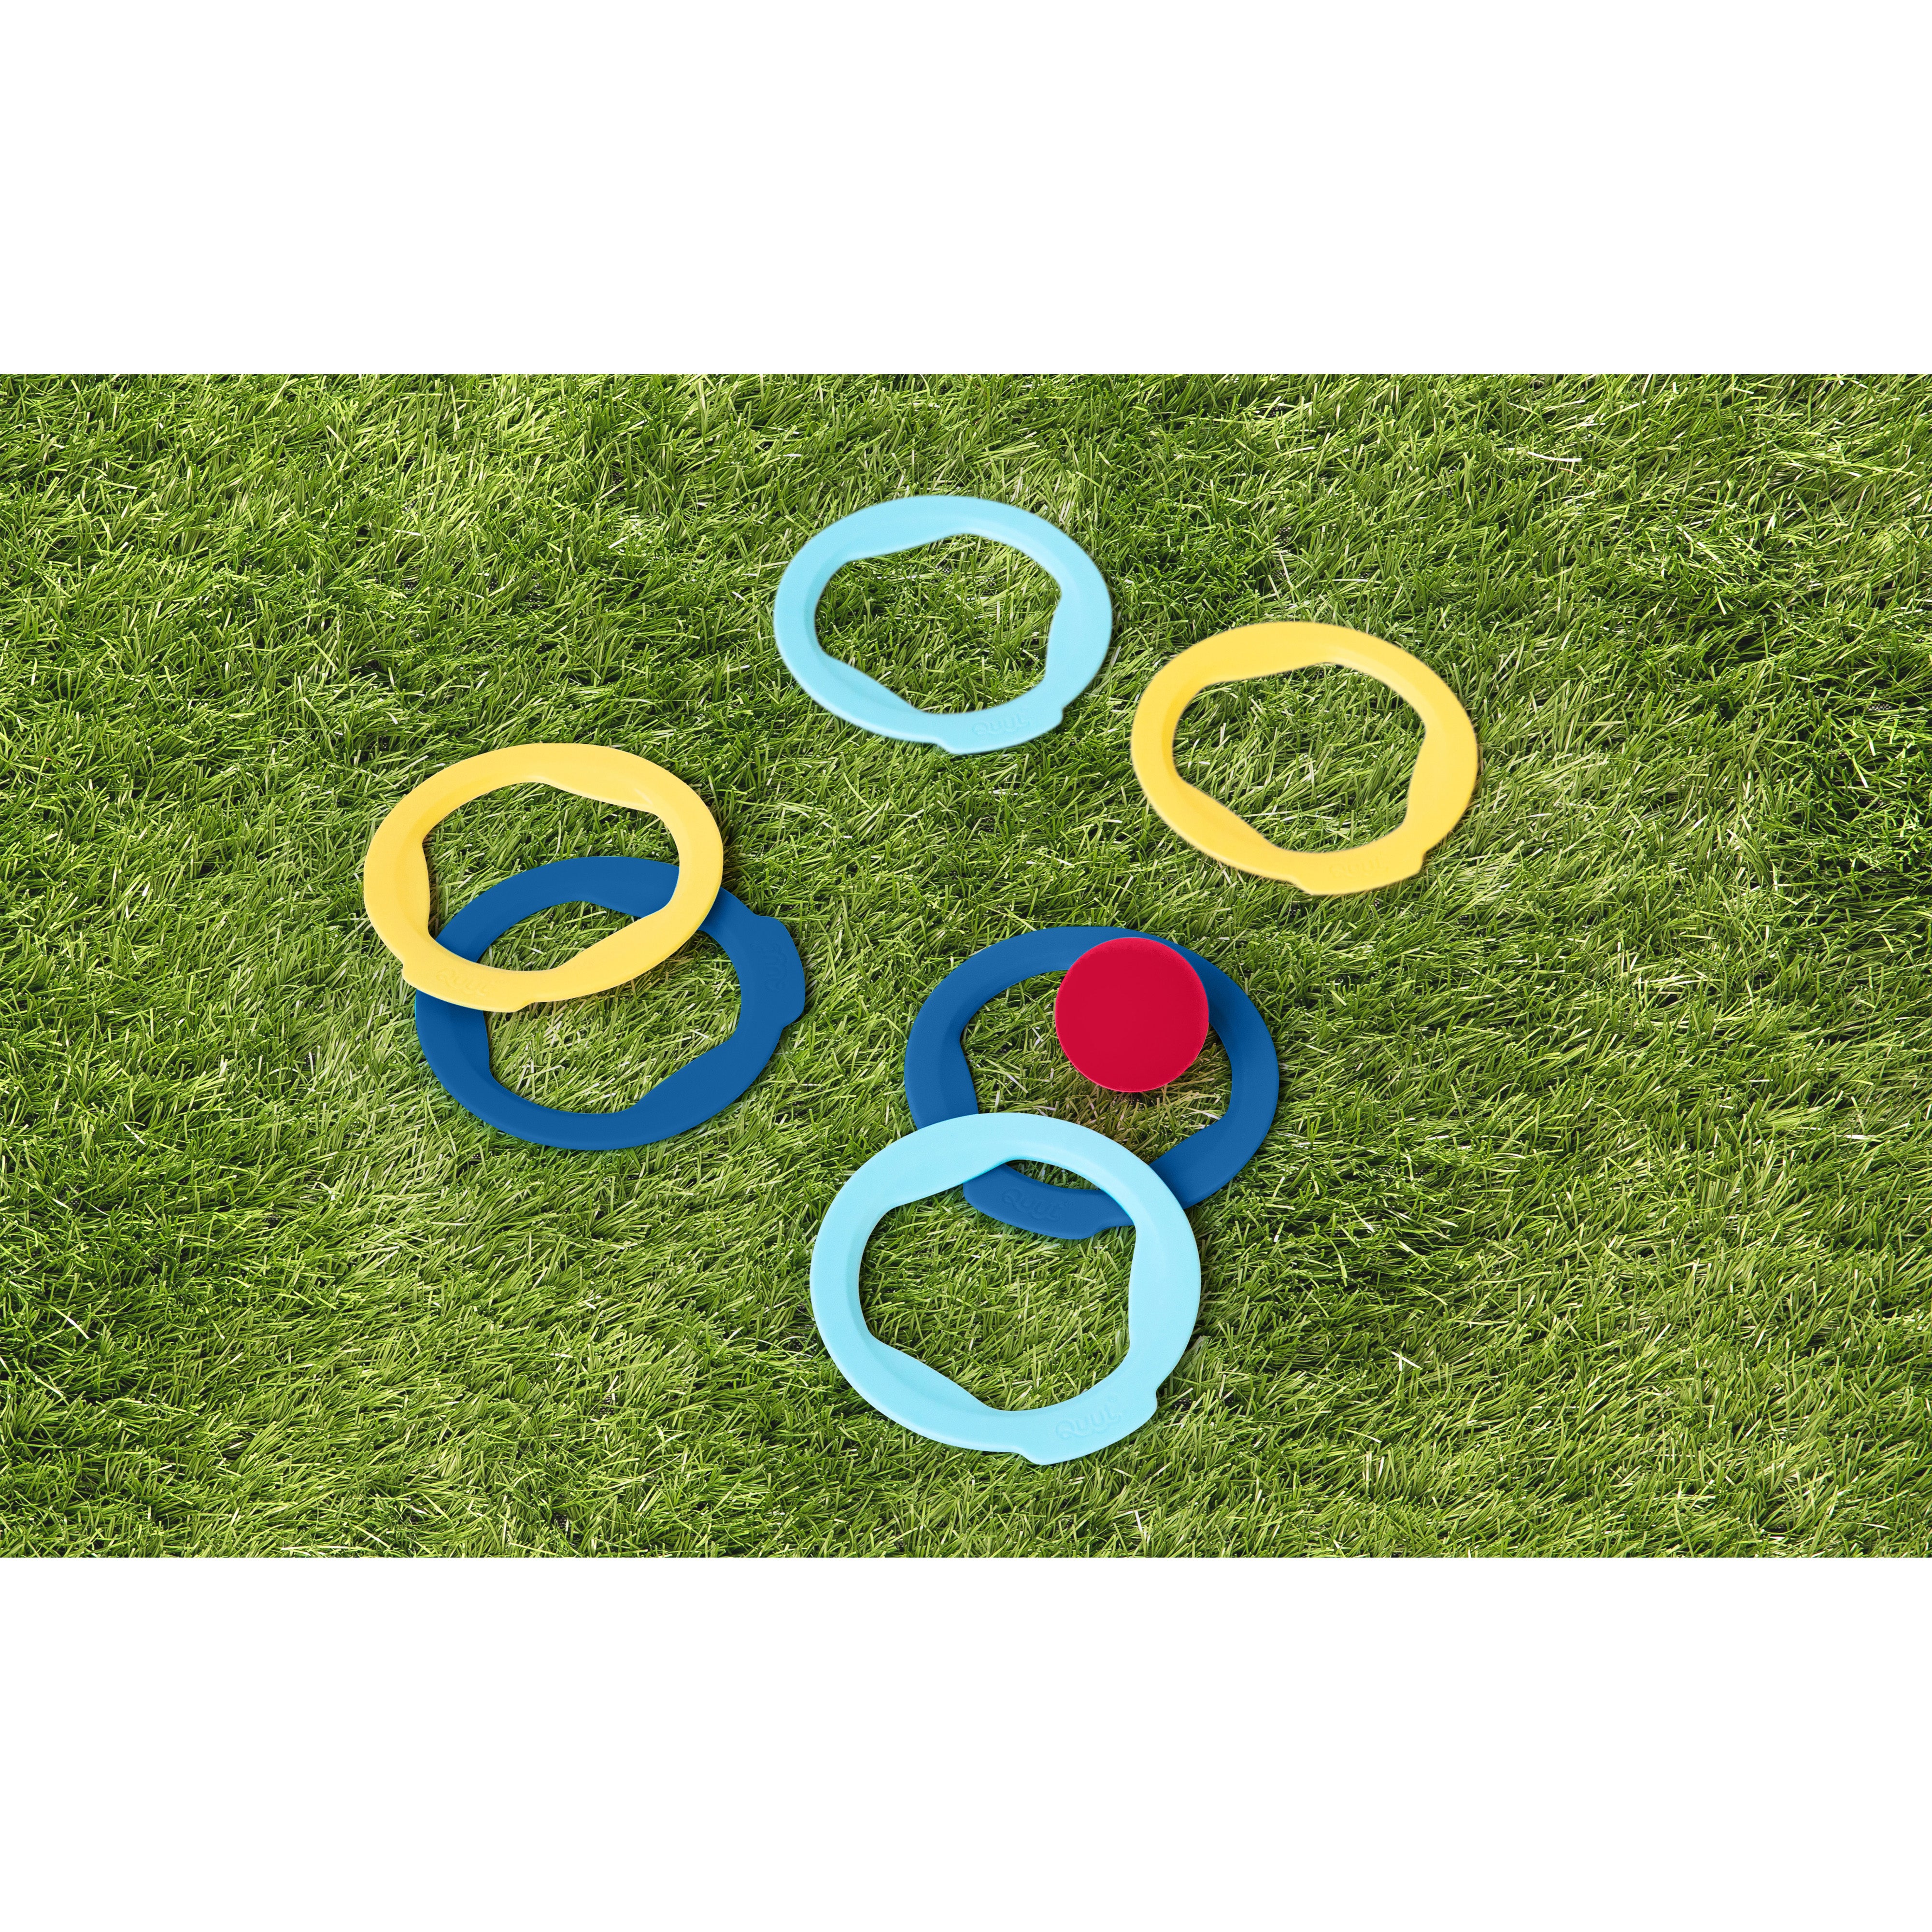 quut-ringo-set-of-6-rings- (5)